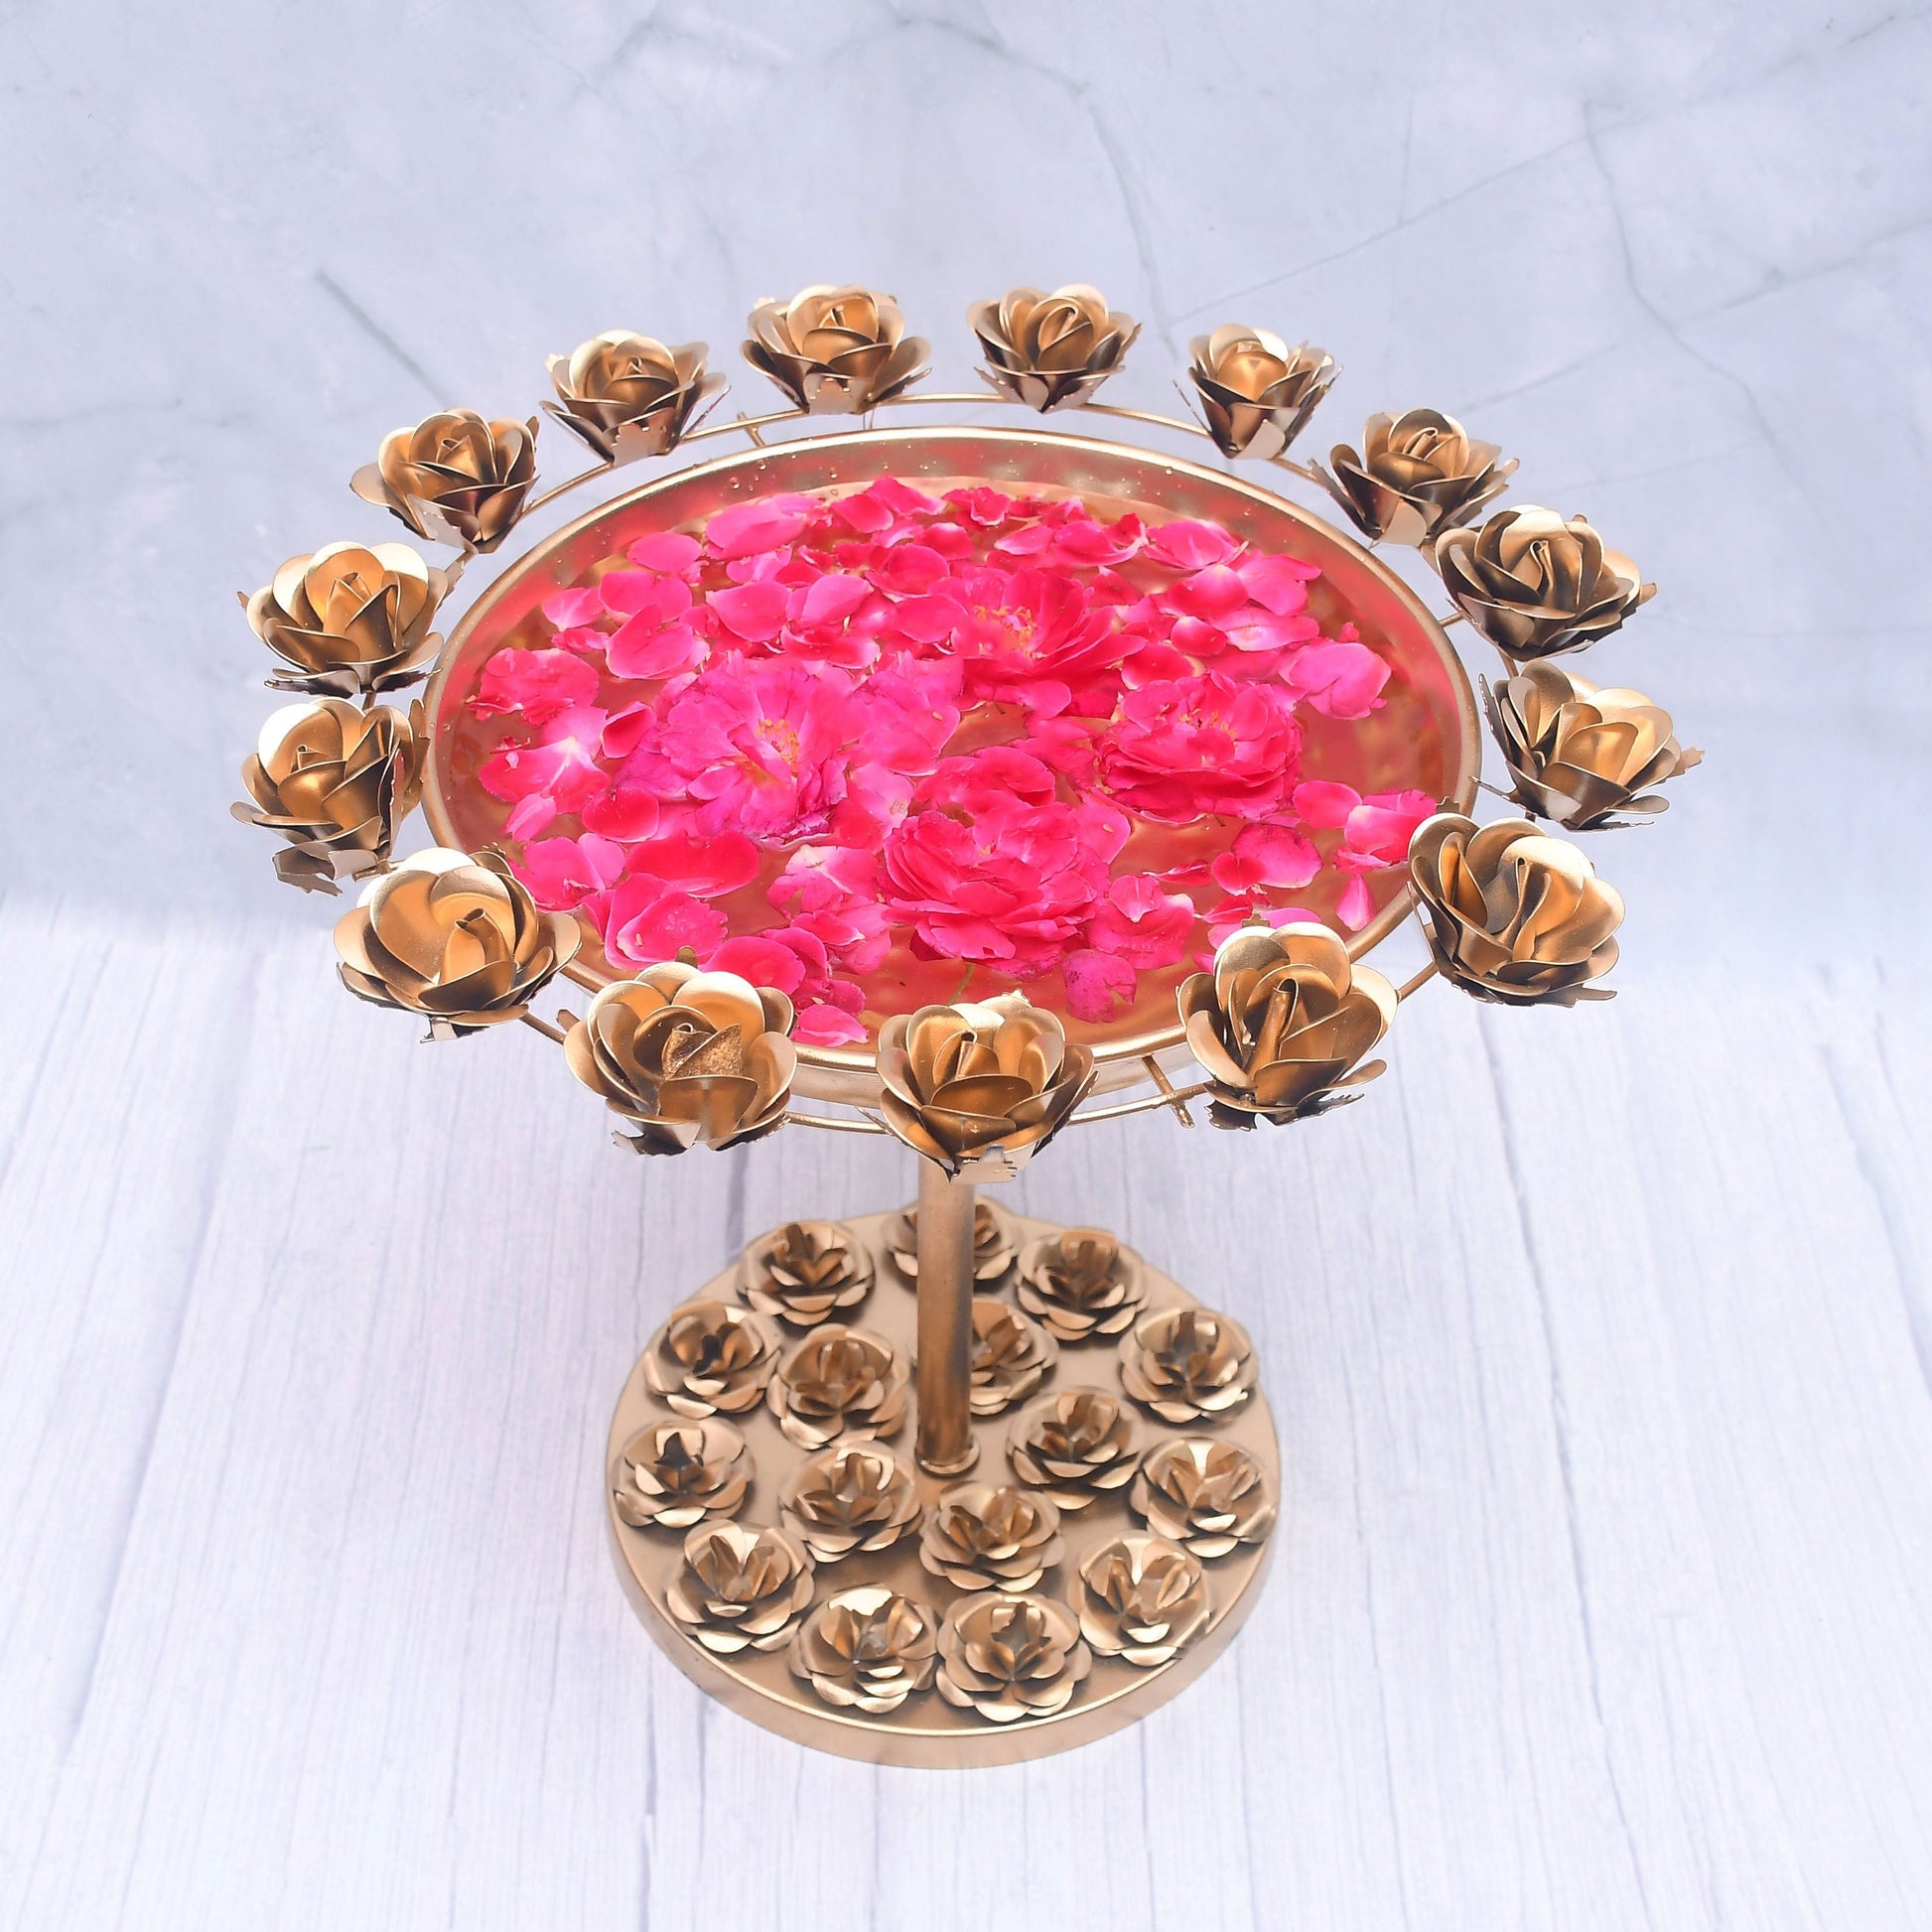 SAMA Homes - beautifully designed rose urli bowl for home decor